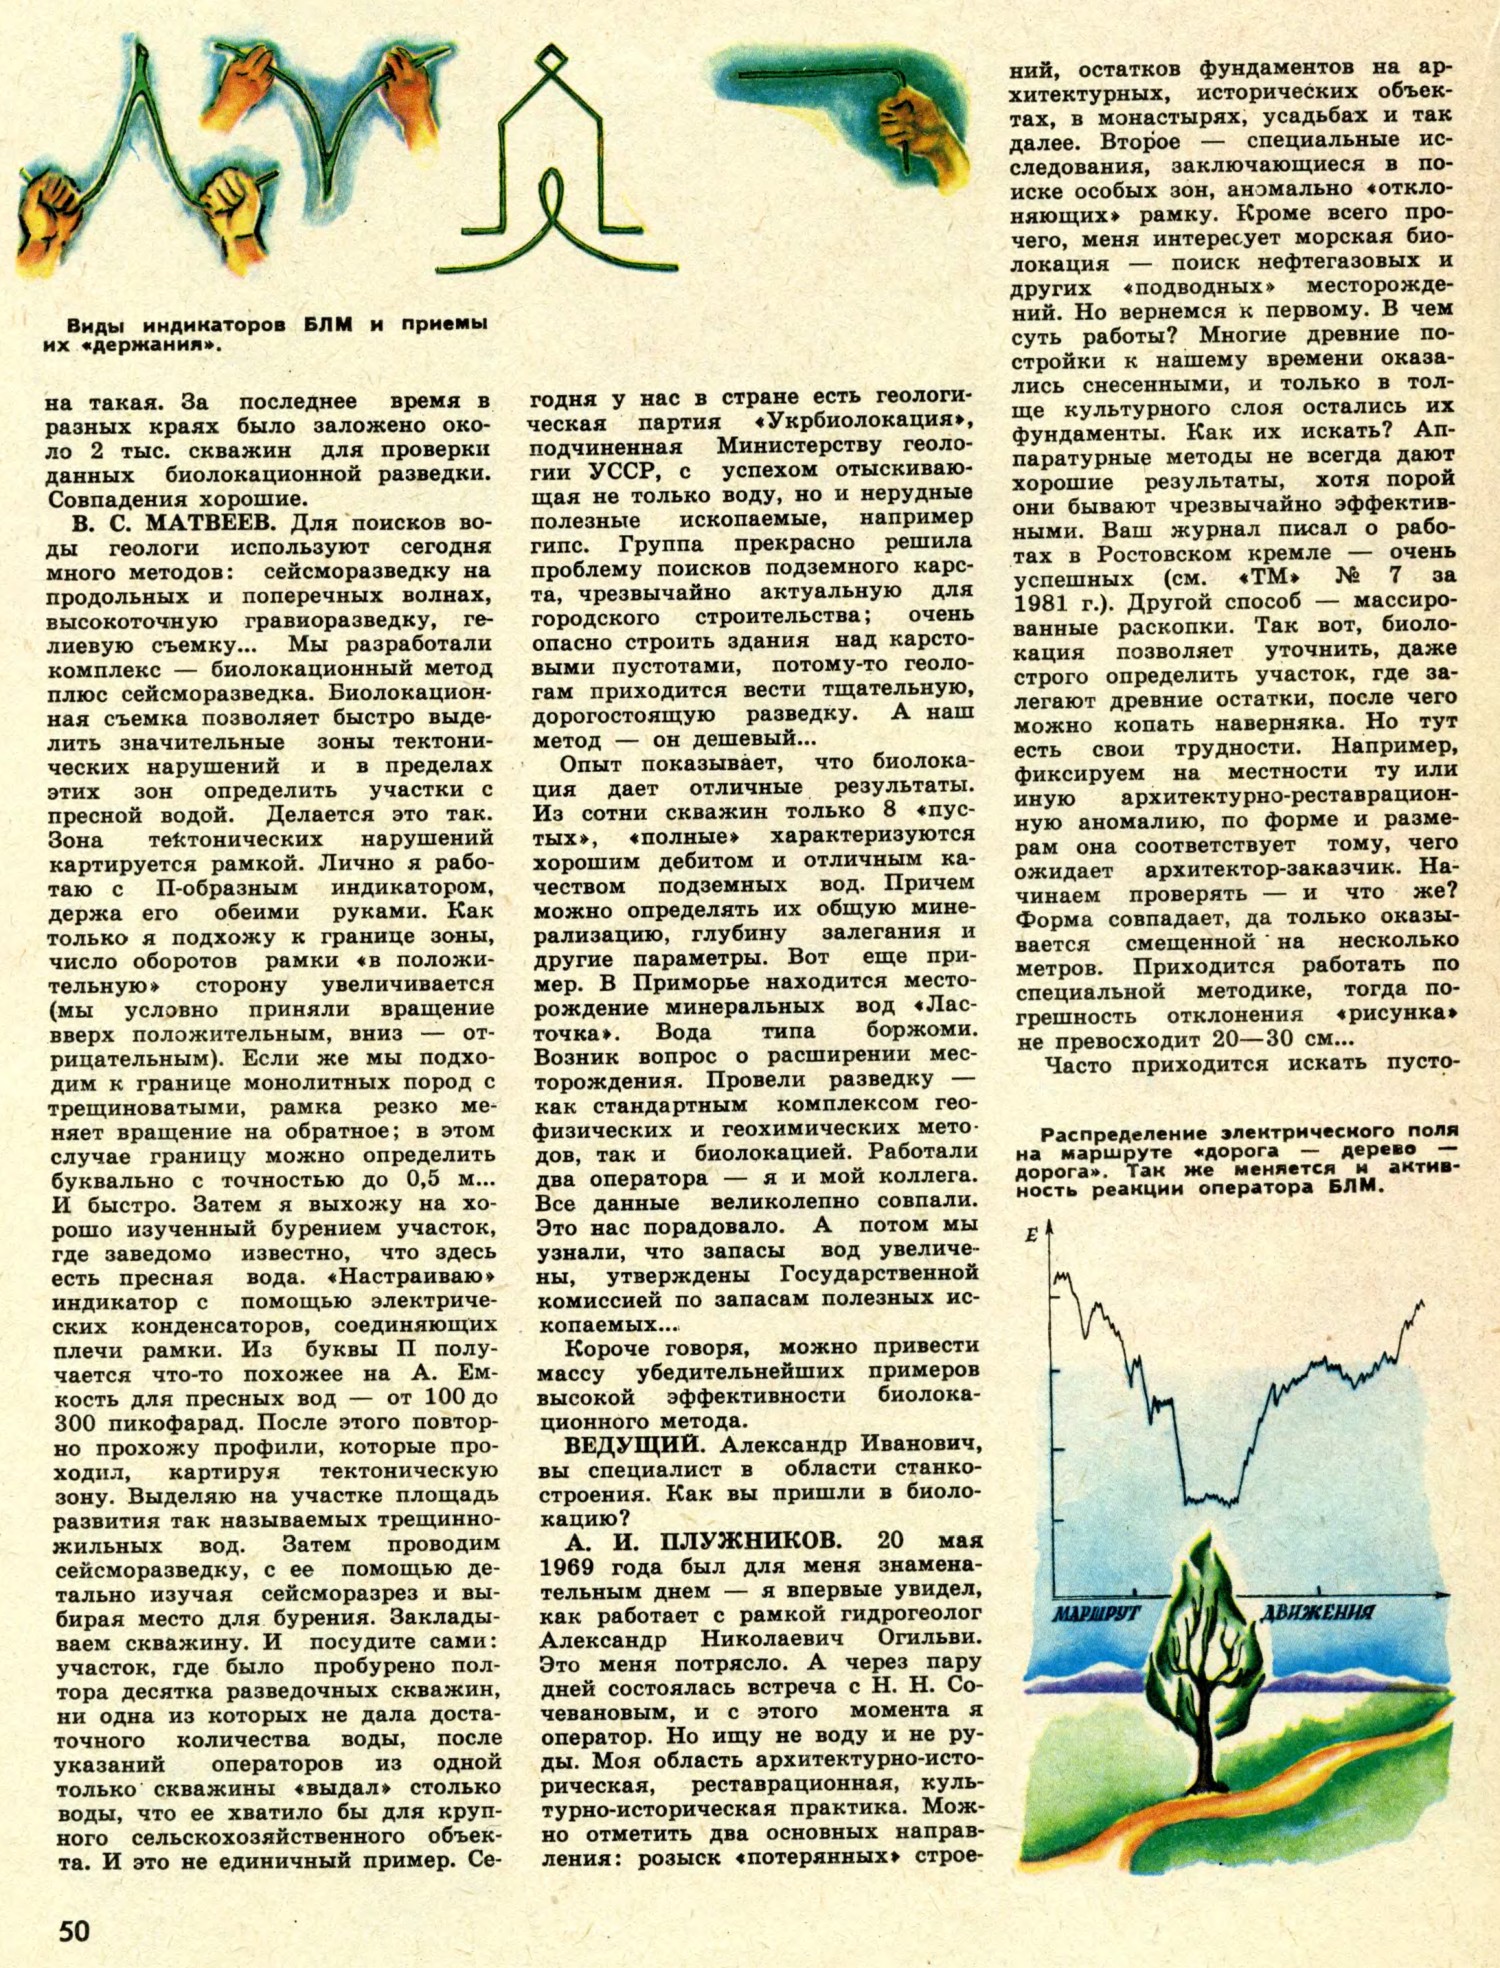 Проблемы биолокации. Техника — Молодёжи, 1983, №2, с.48-53. Фотокопия №3